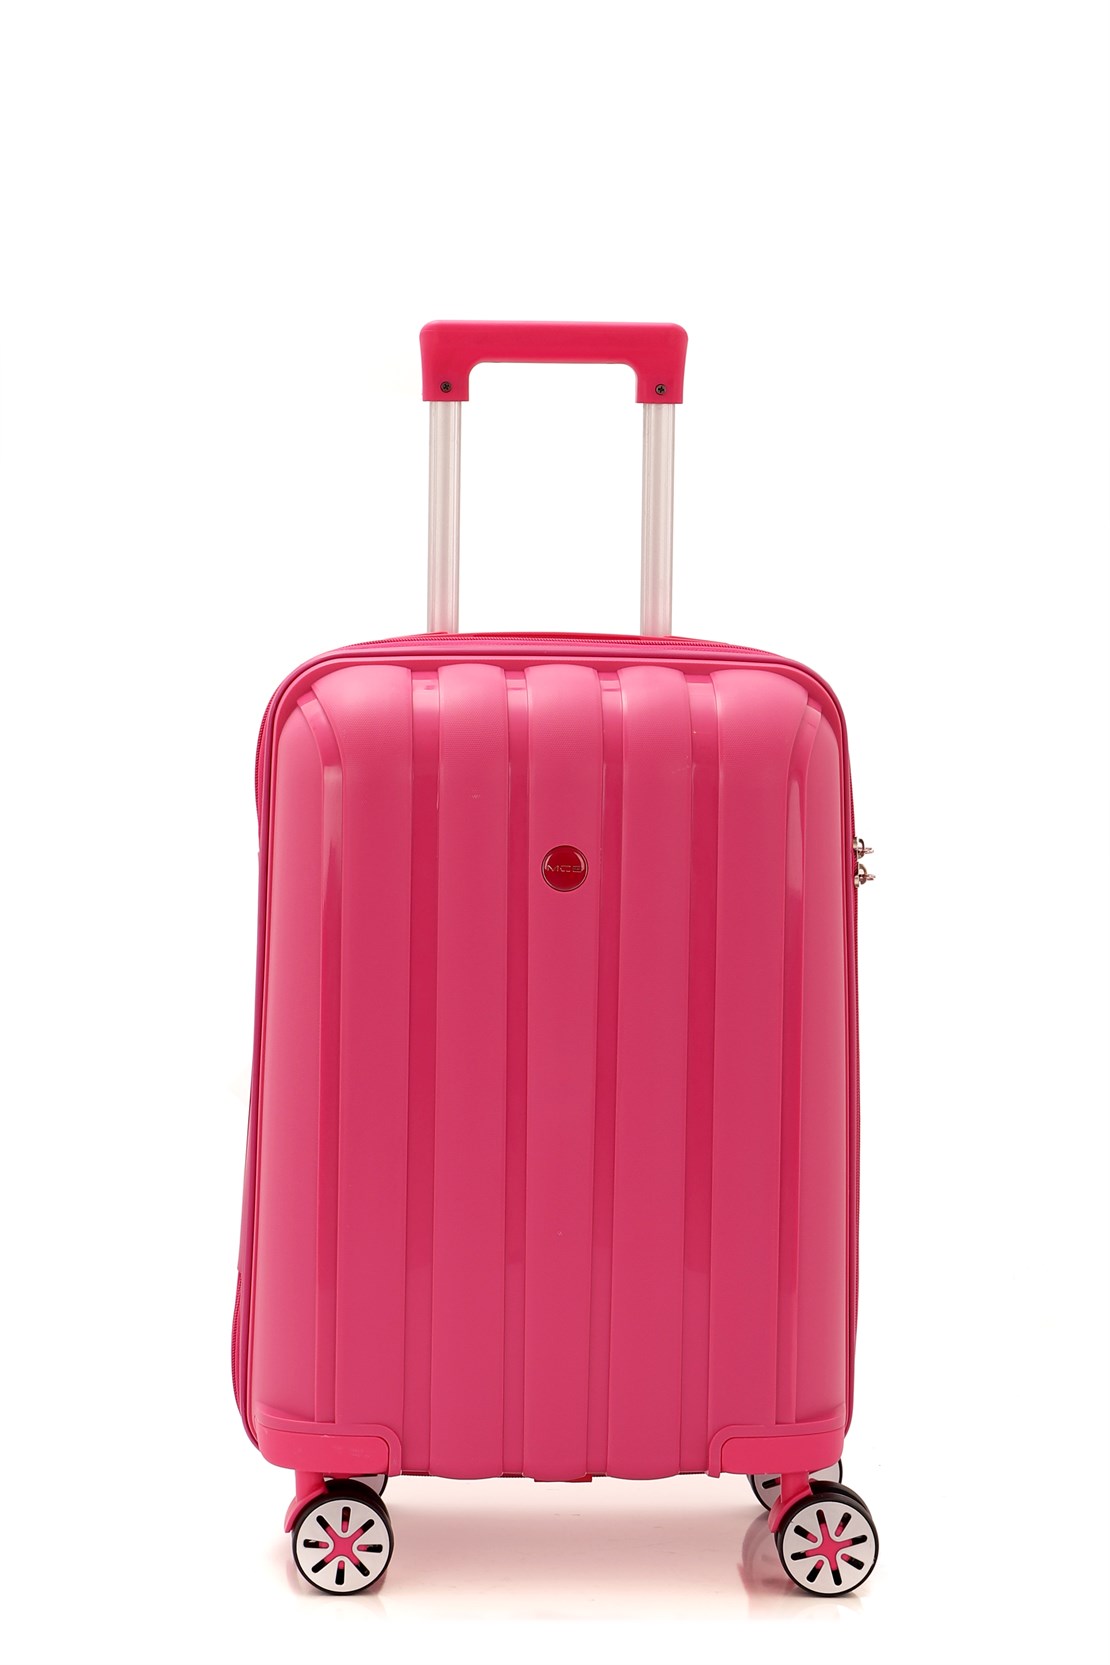 Маленький чемодан для ручьной клади из полипропилена MCS V305 S ! Для 8-10 кг! - 5